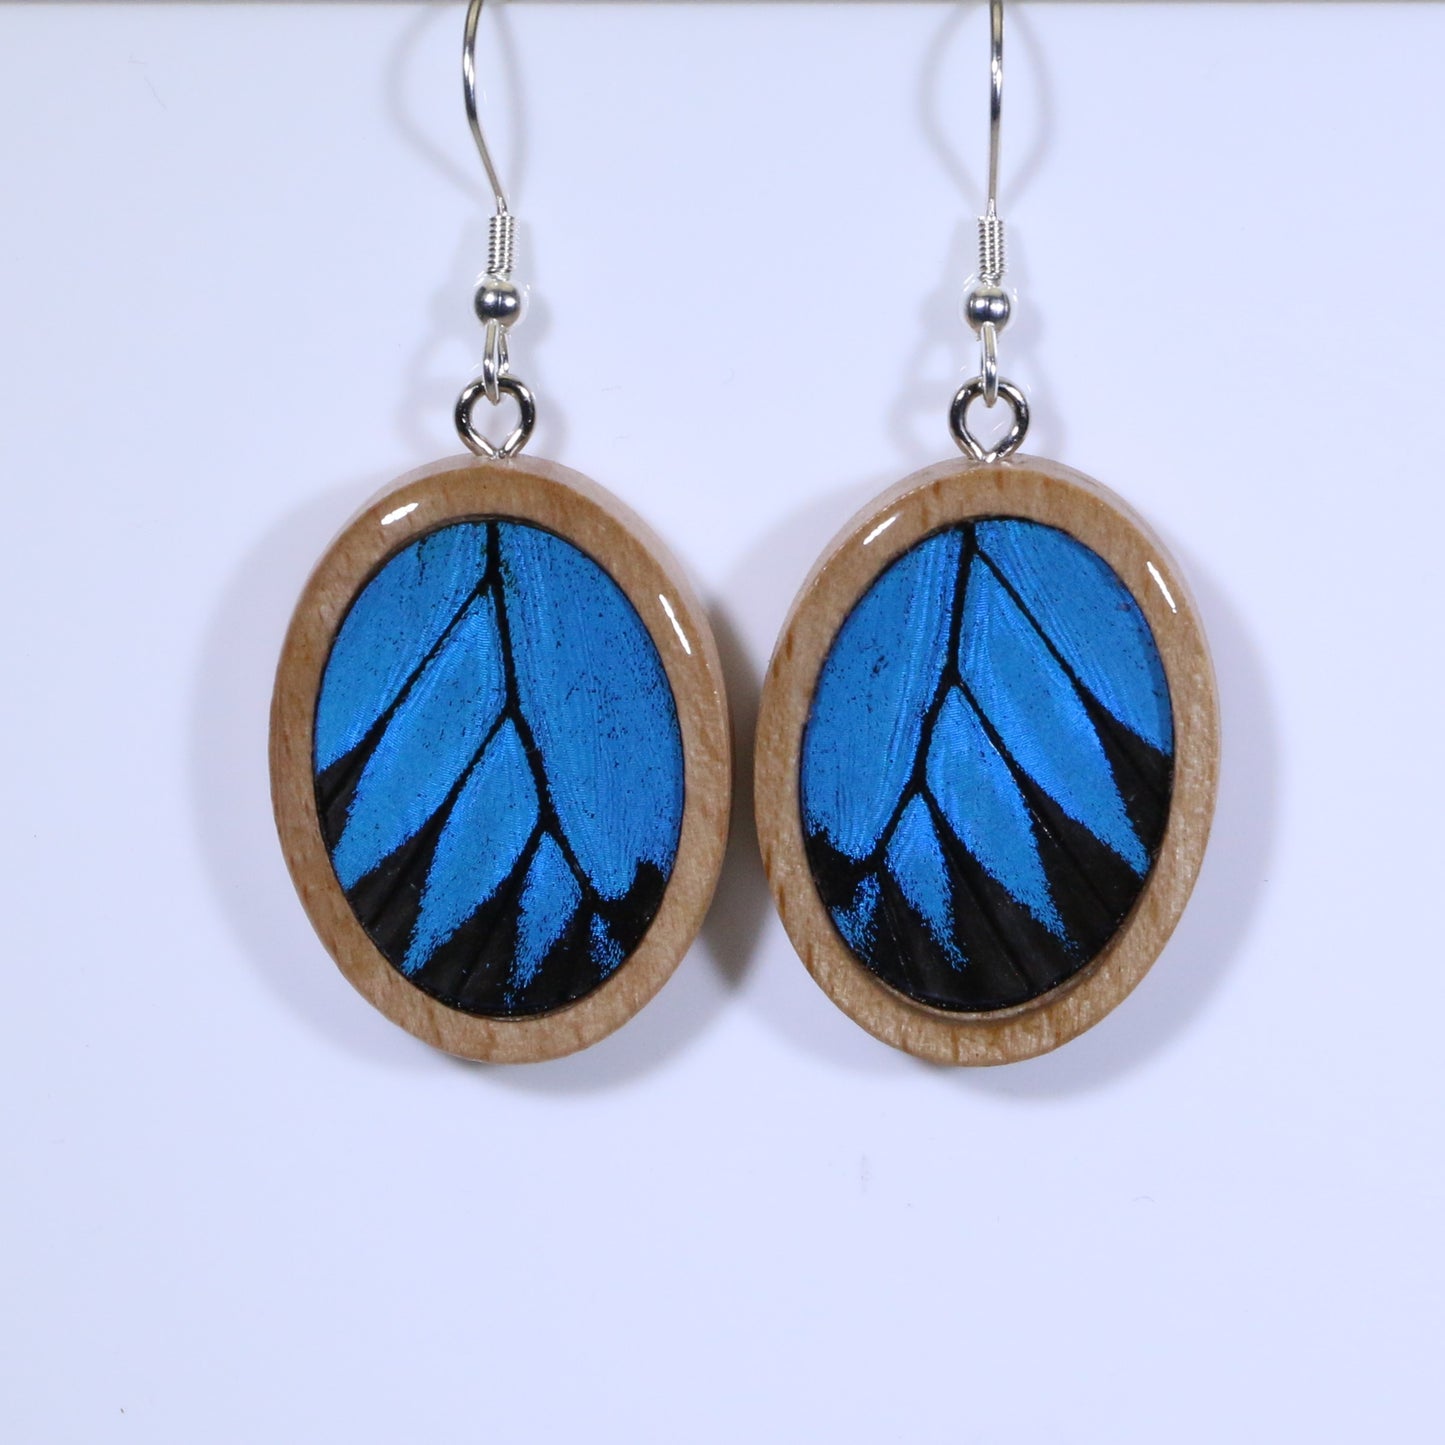 51607 - Real Butterfly Wing Jewelry - Earrings - Medium - Tan Wood - Oval - Plain - Blue Mountain Swallowtail